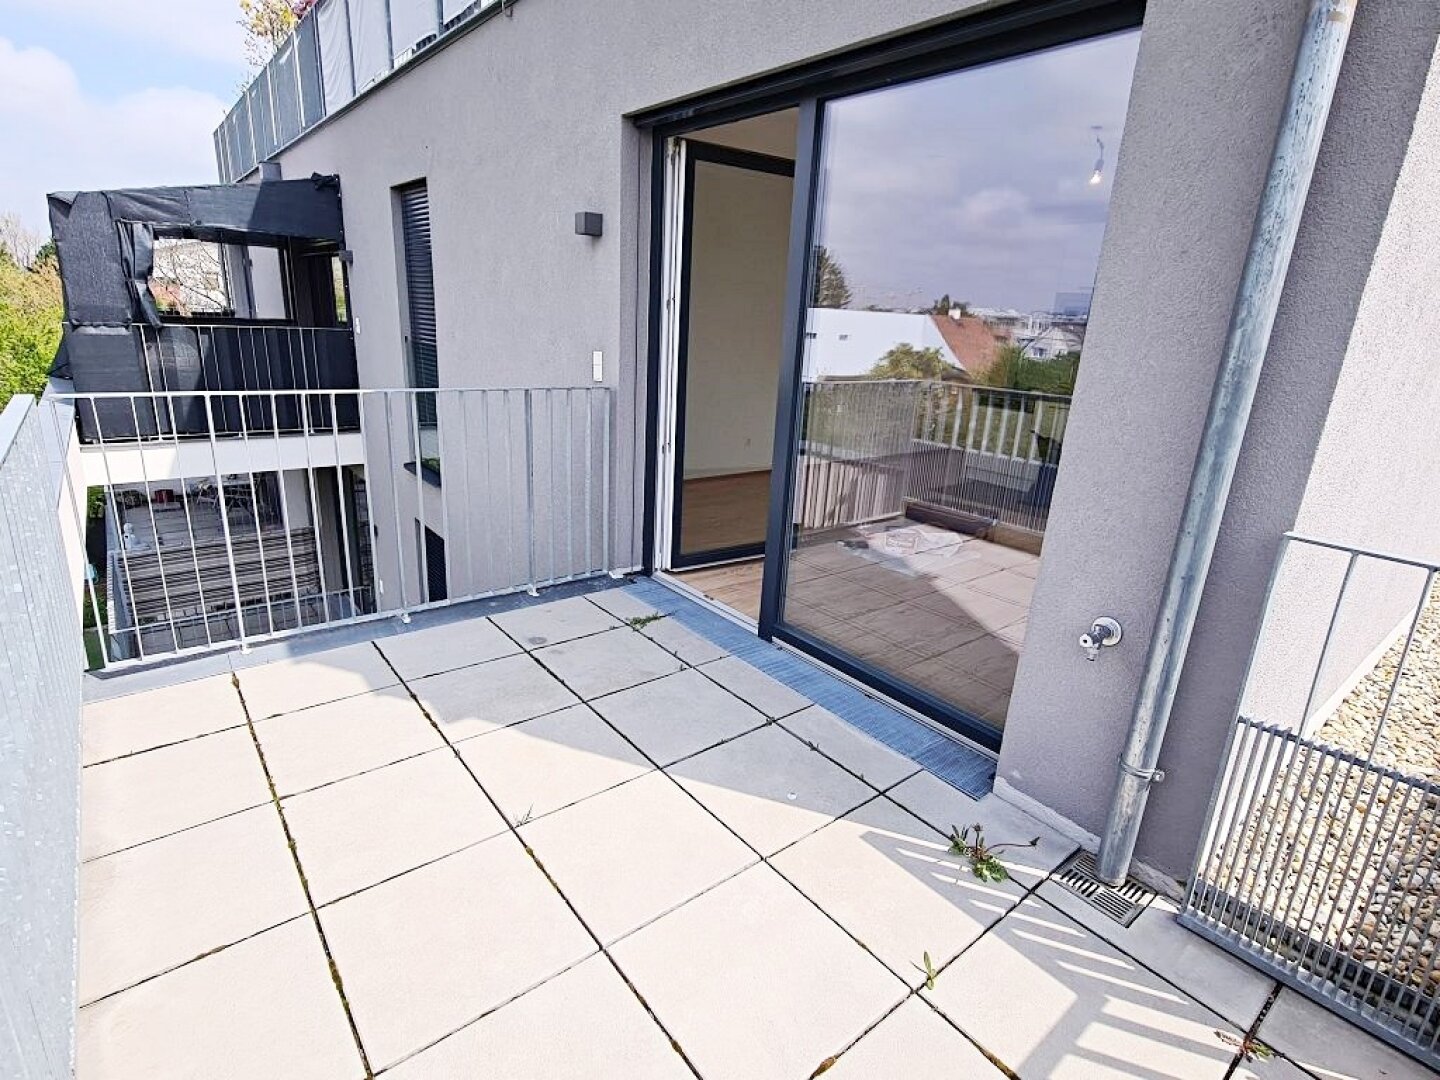 PROVISIONSFREI, GRÜNBLICK, sonnige 58 m2 Neubau mit 18 m2 Balkonfläche, Wohnküche, 2 Zimmer, Wannenbad, 2. Liftstock, Lavendelweg